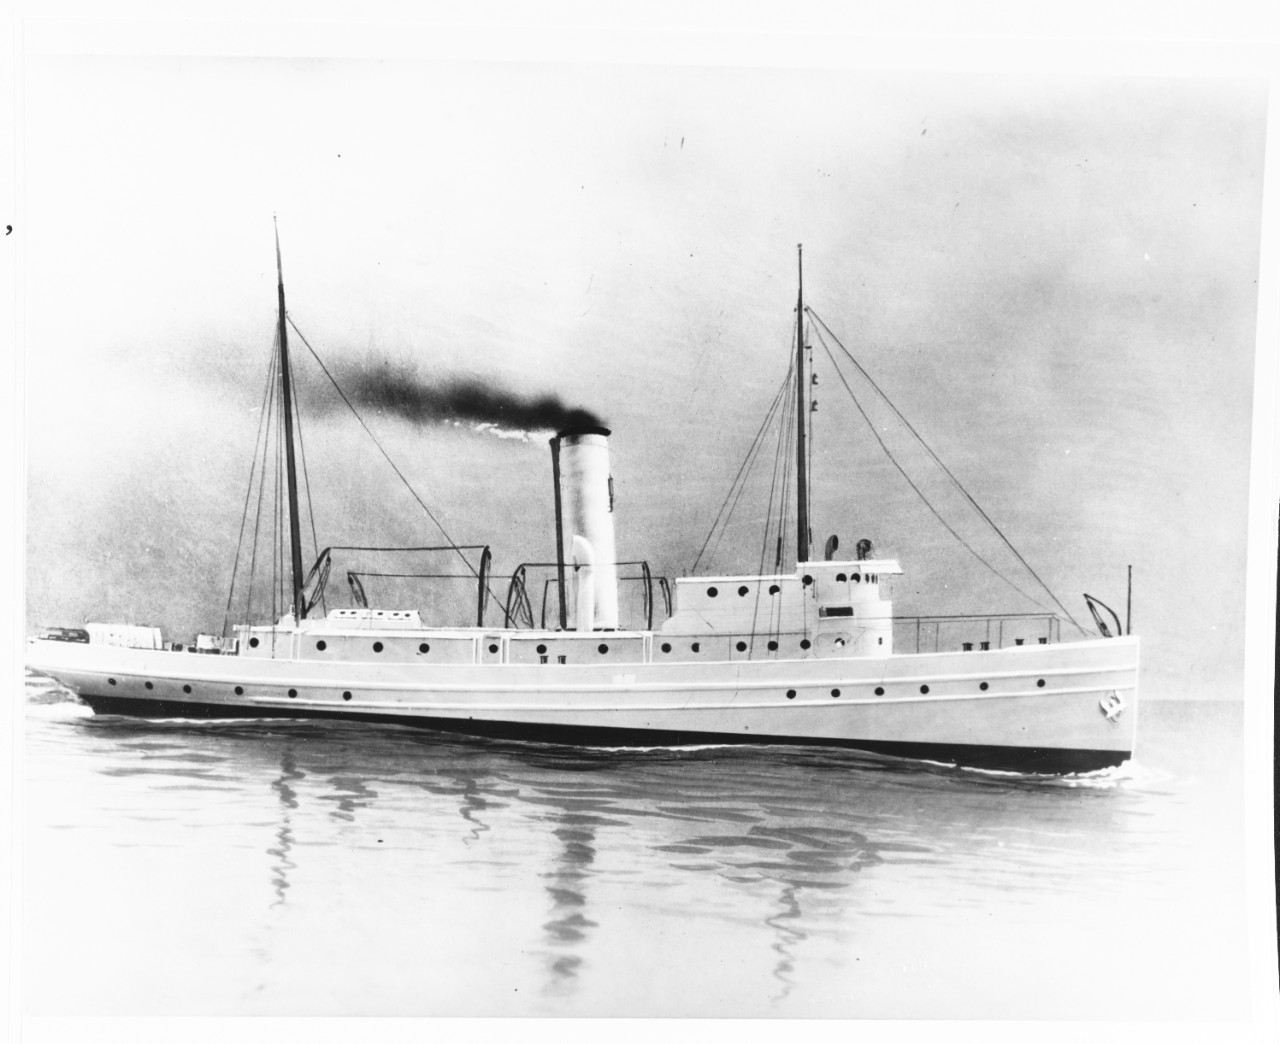 USCGC ACUSHNET (U.S. Coast Guard Cutter, 1908)